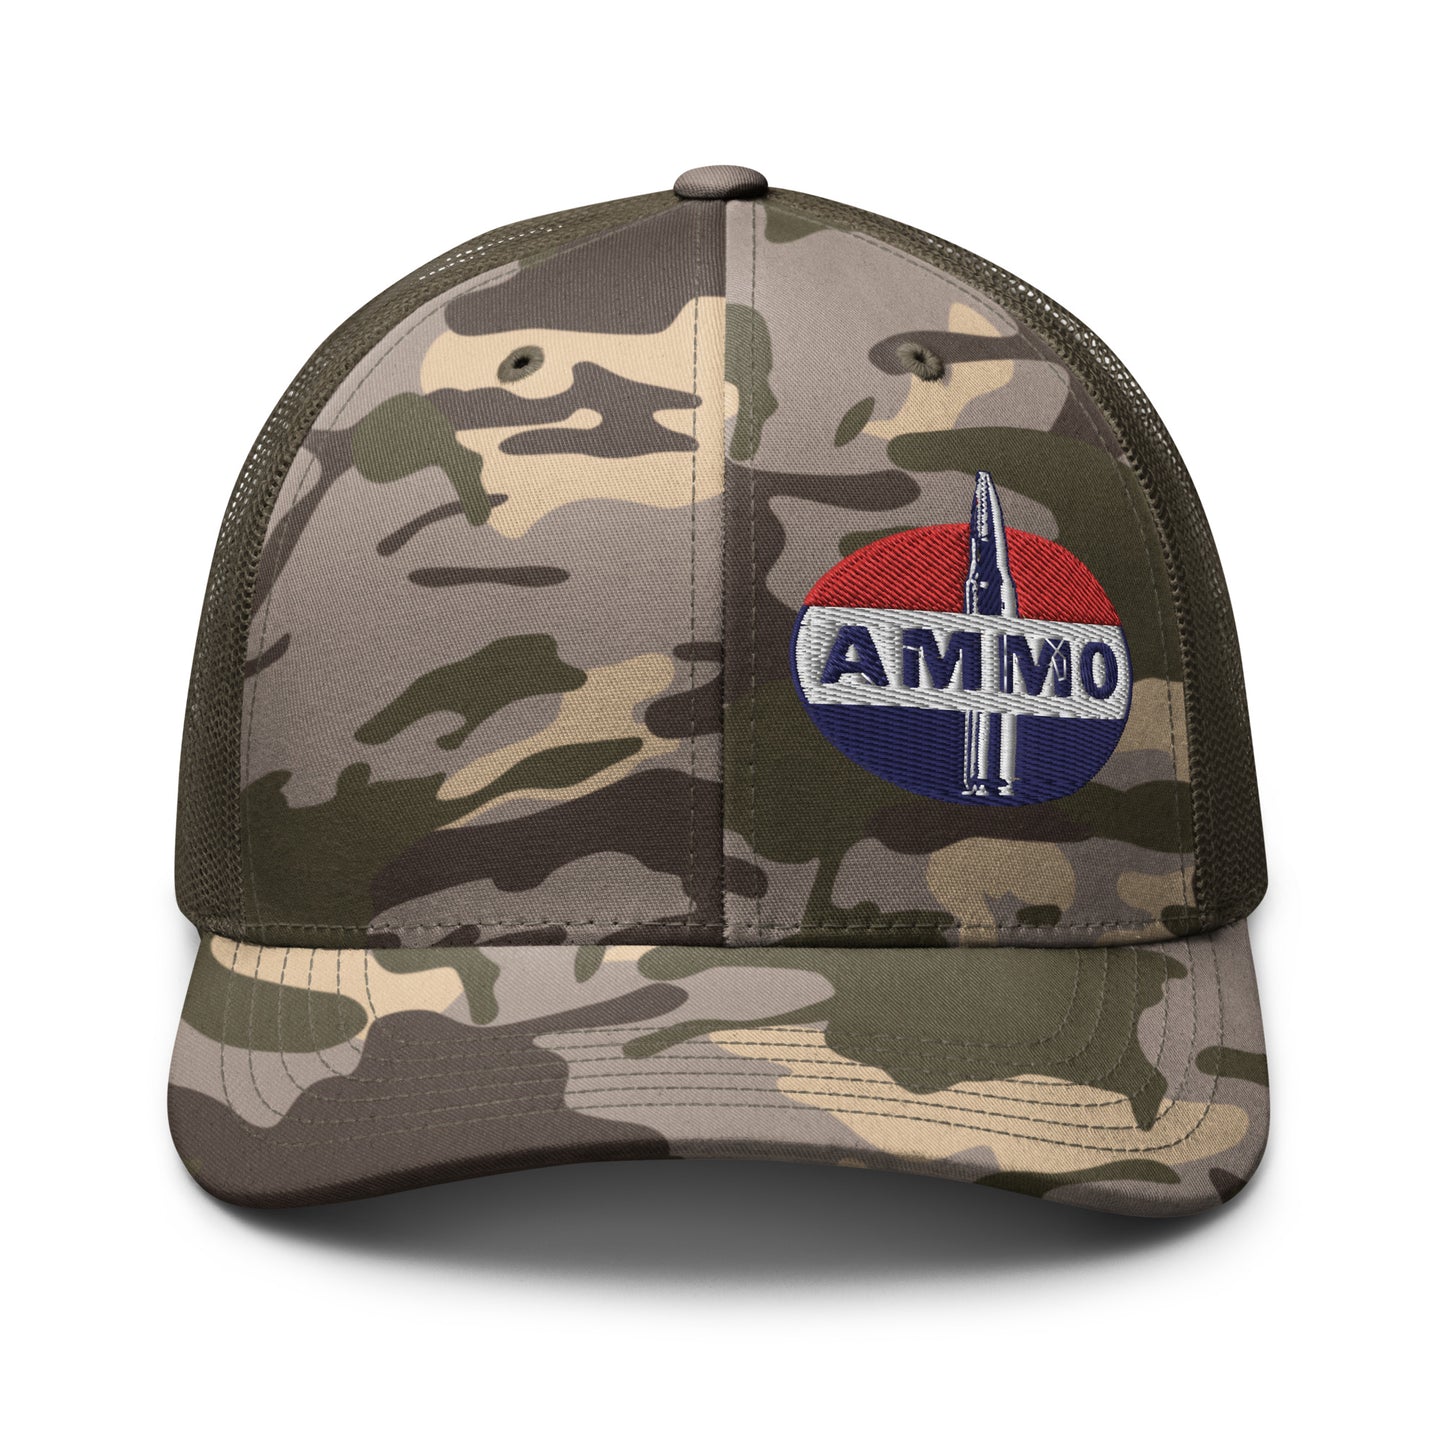 AMMO- Fuel Parody Camouflage trucker hat